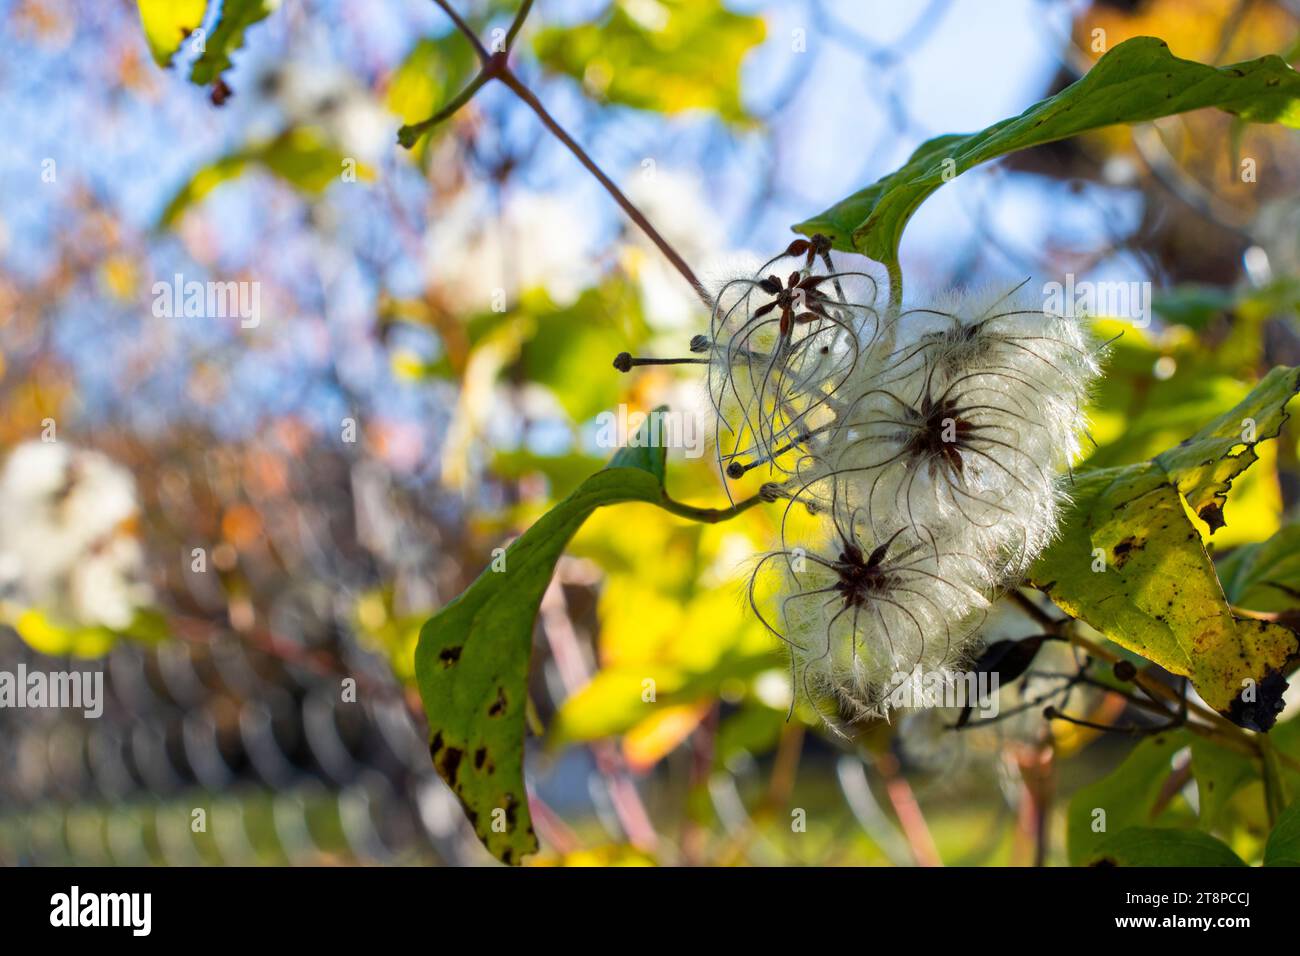 Clematis brachiataon the fence in autumn Stock Photo